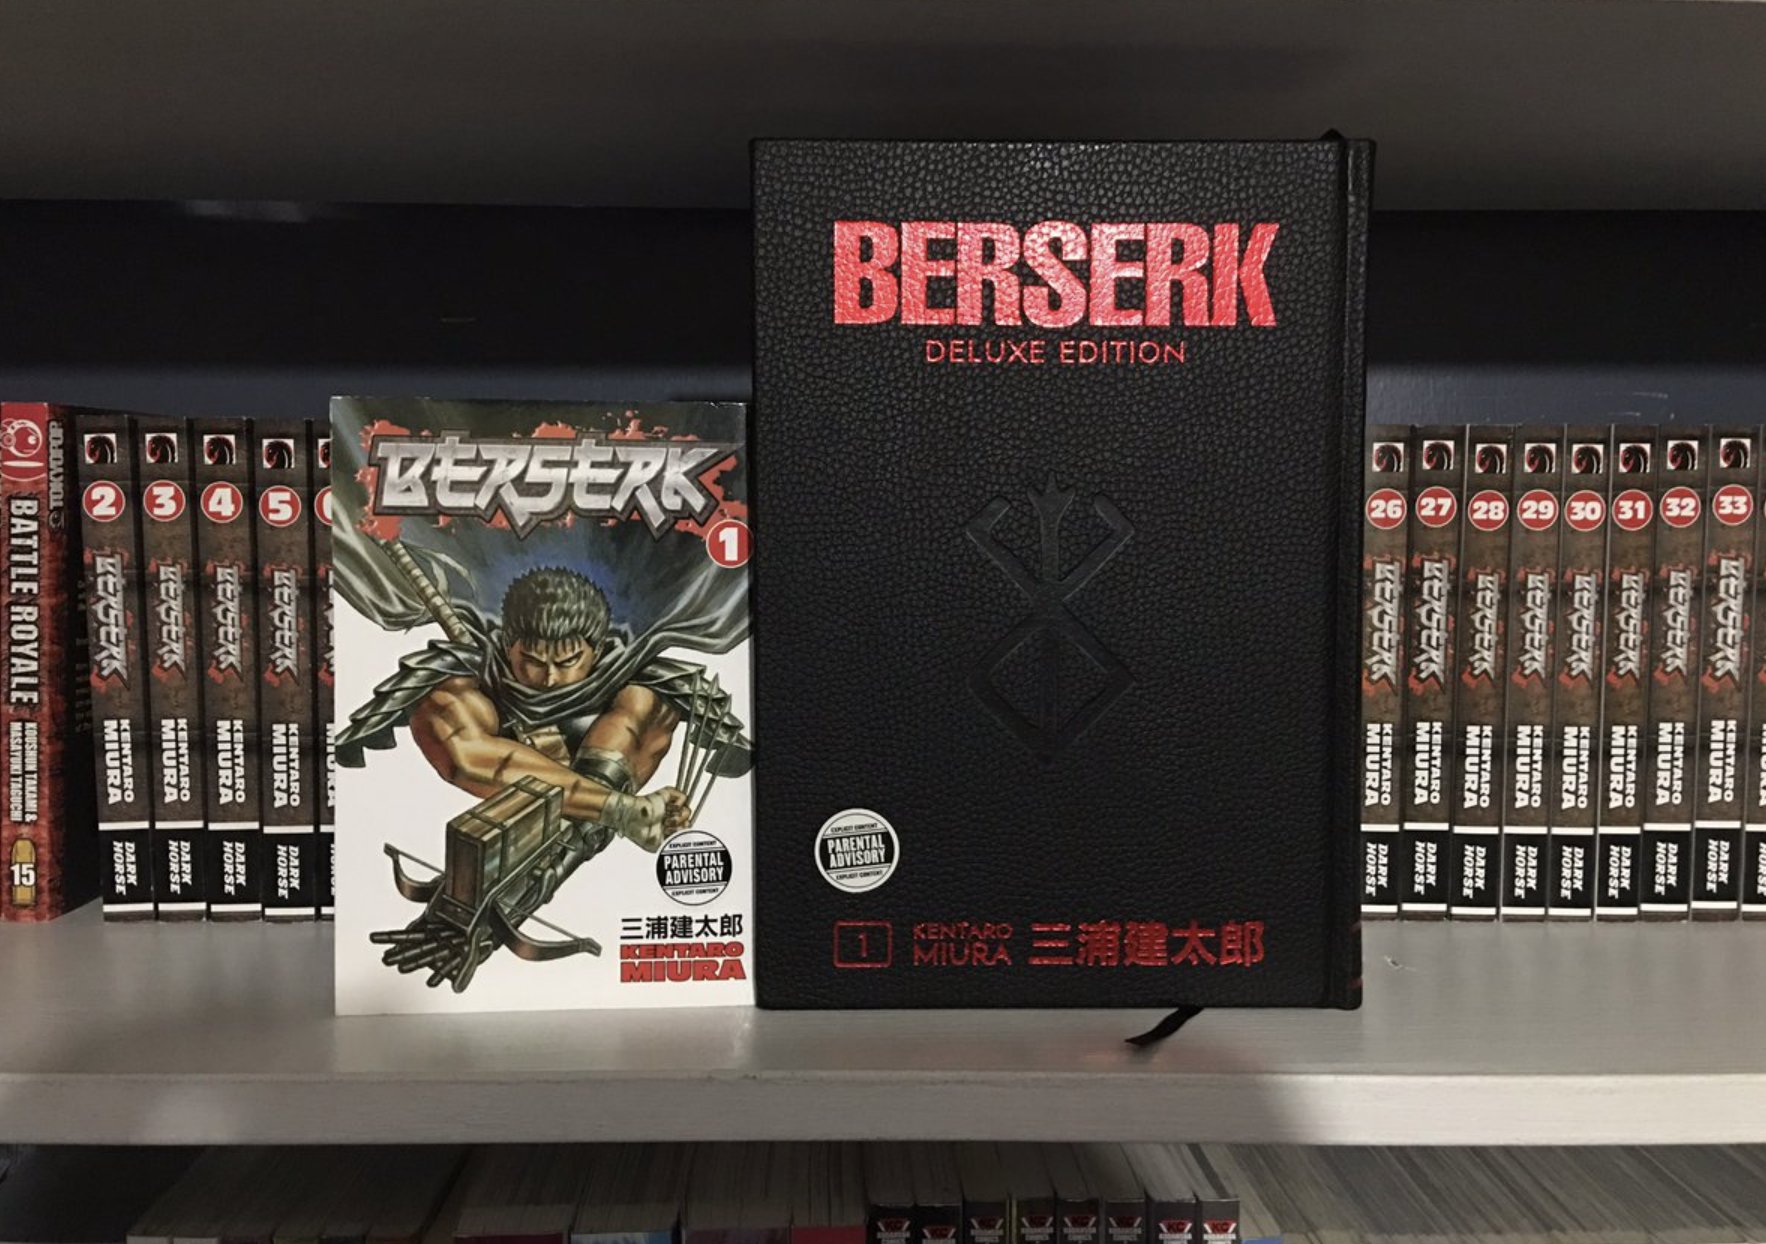 JWulen on X: Berserk Deluxe es la mejor edición que existe de Berserk.  Cada volumen son 3 tomos del manga. La calidad es DIOS, es leer Berserk en  formato A4 y con